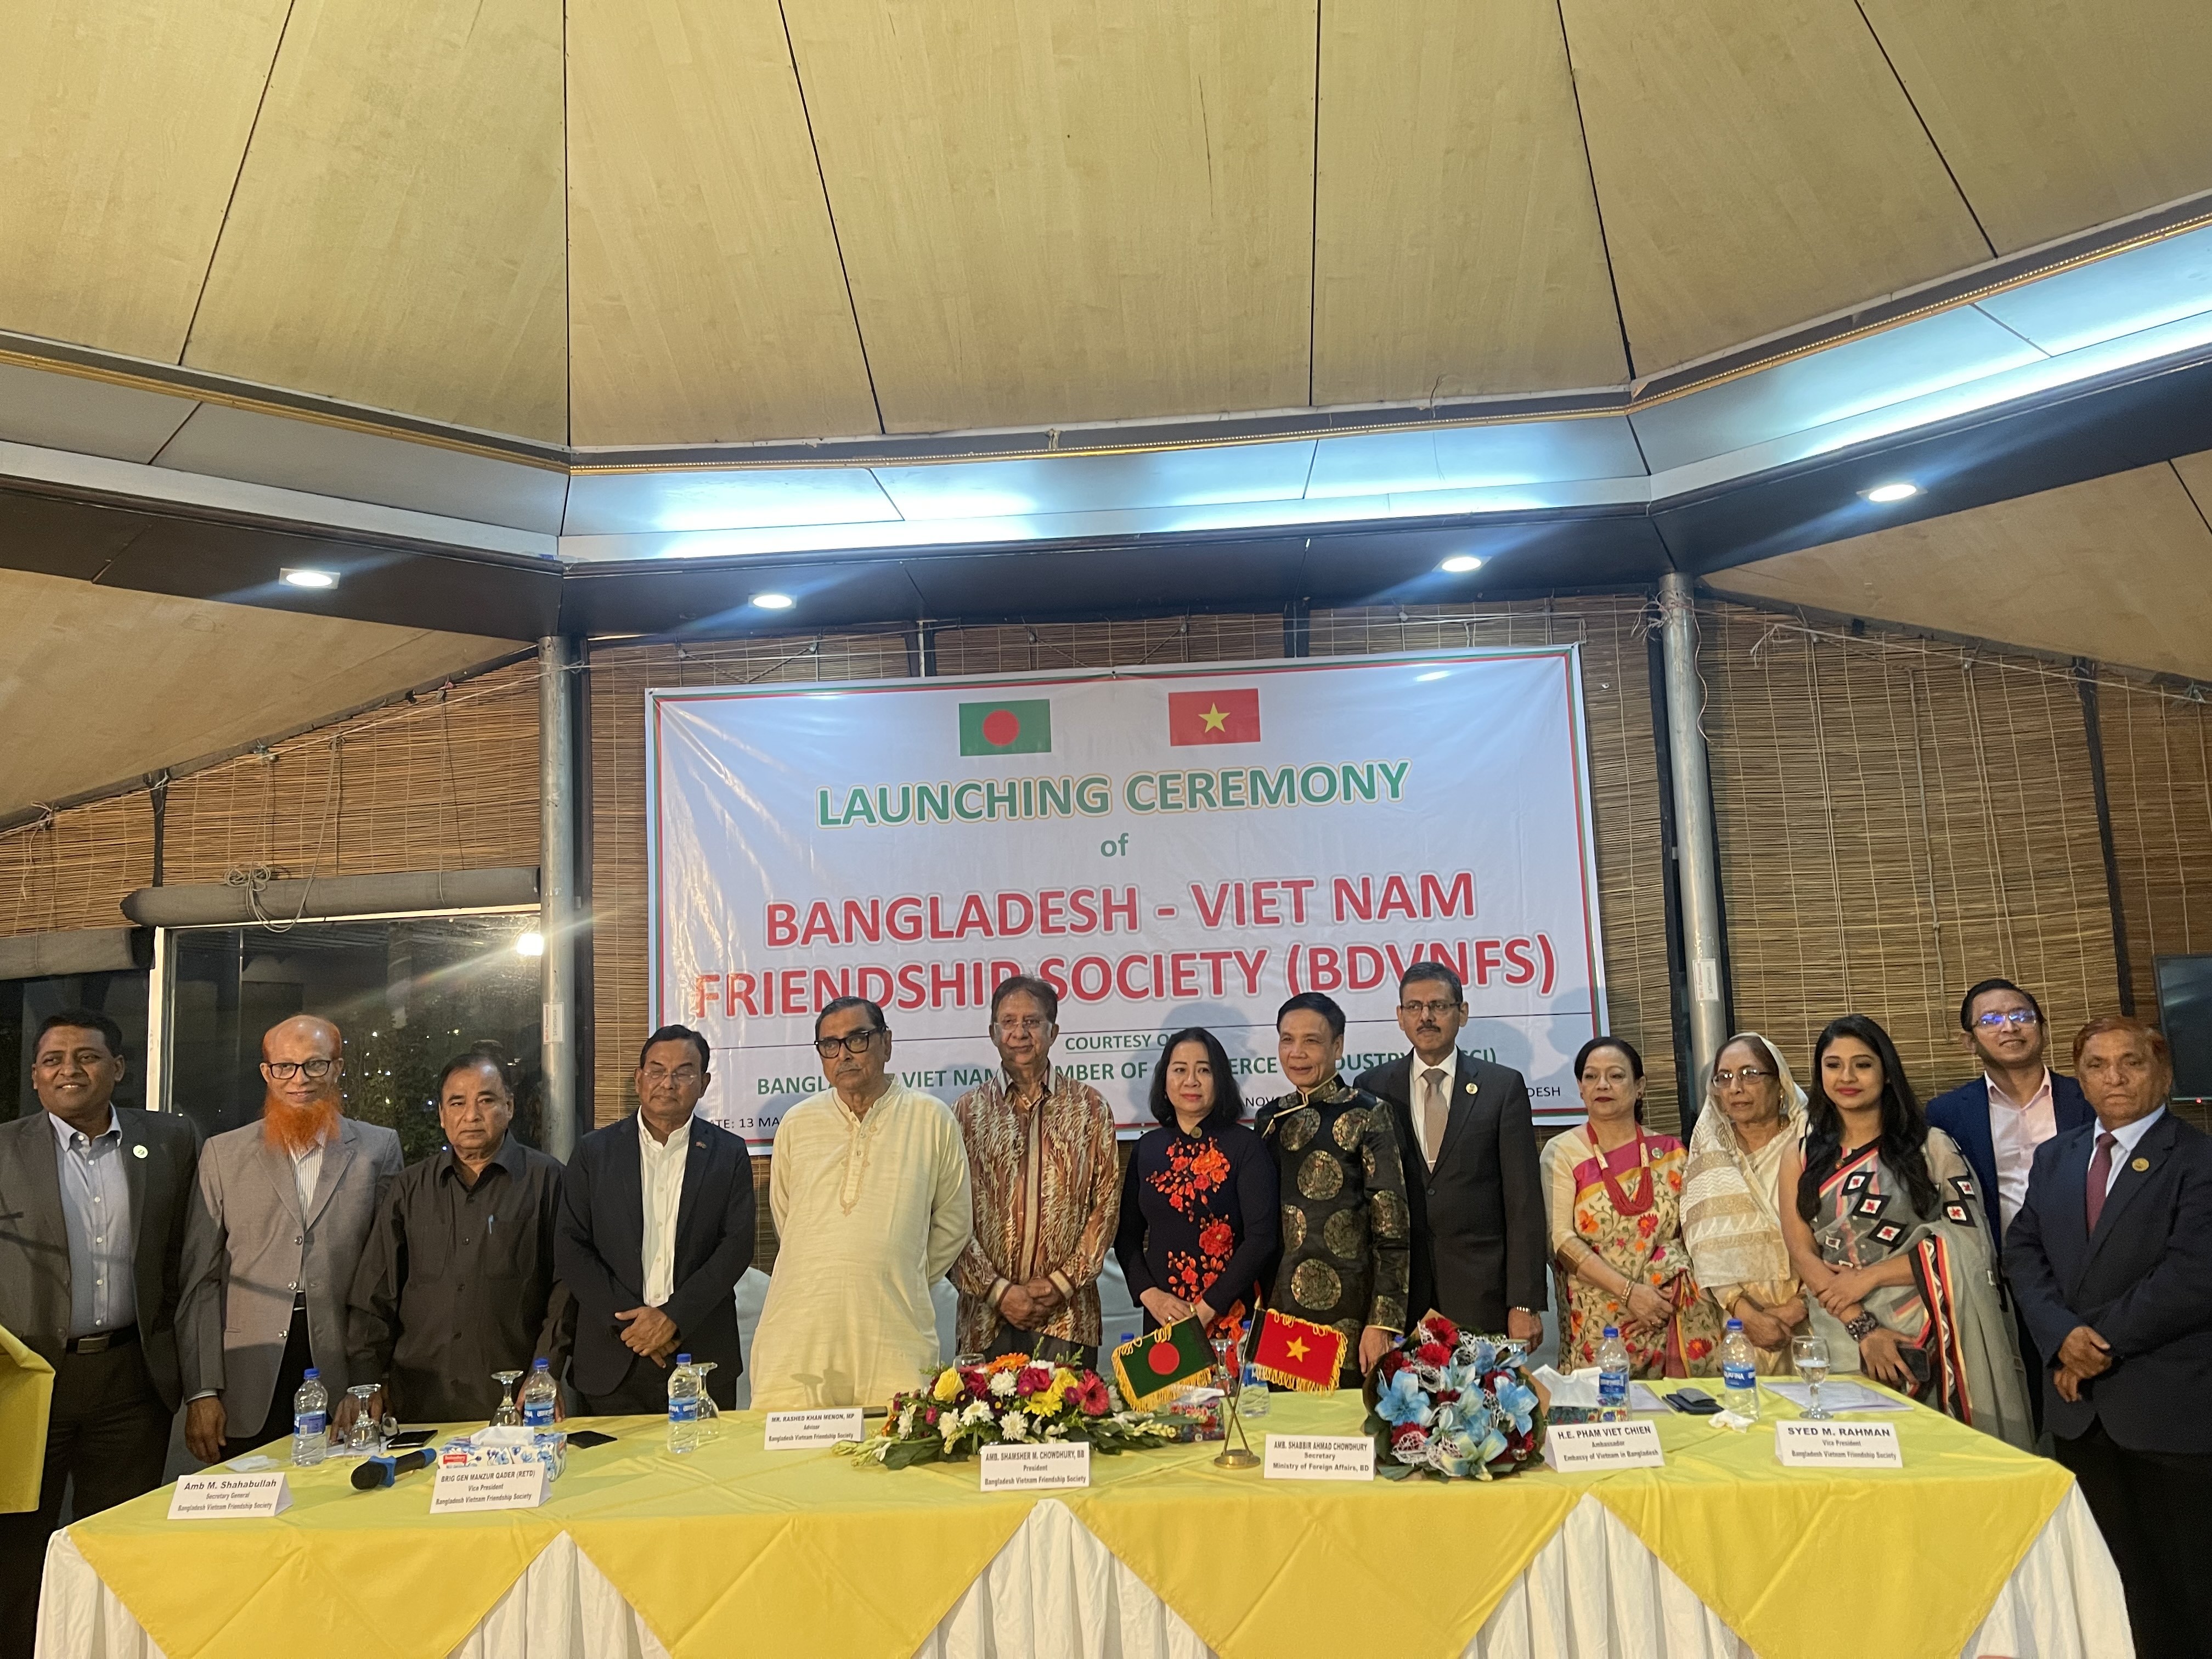 Xung lực mới cho quan hệ nhân dân Việt Nam - Bangladesh